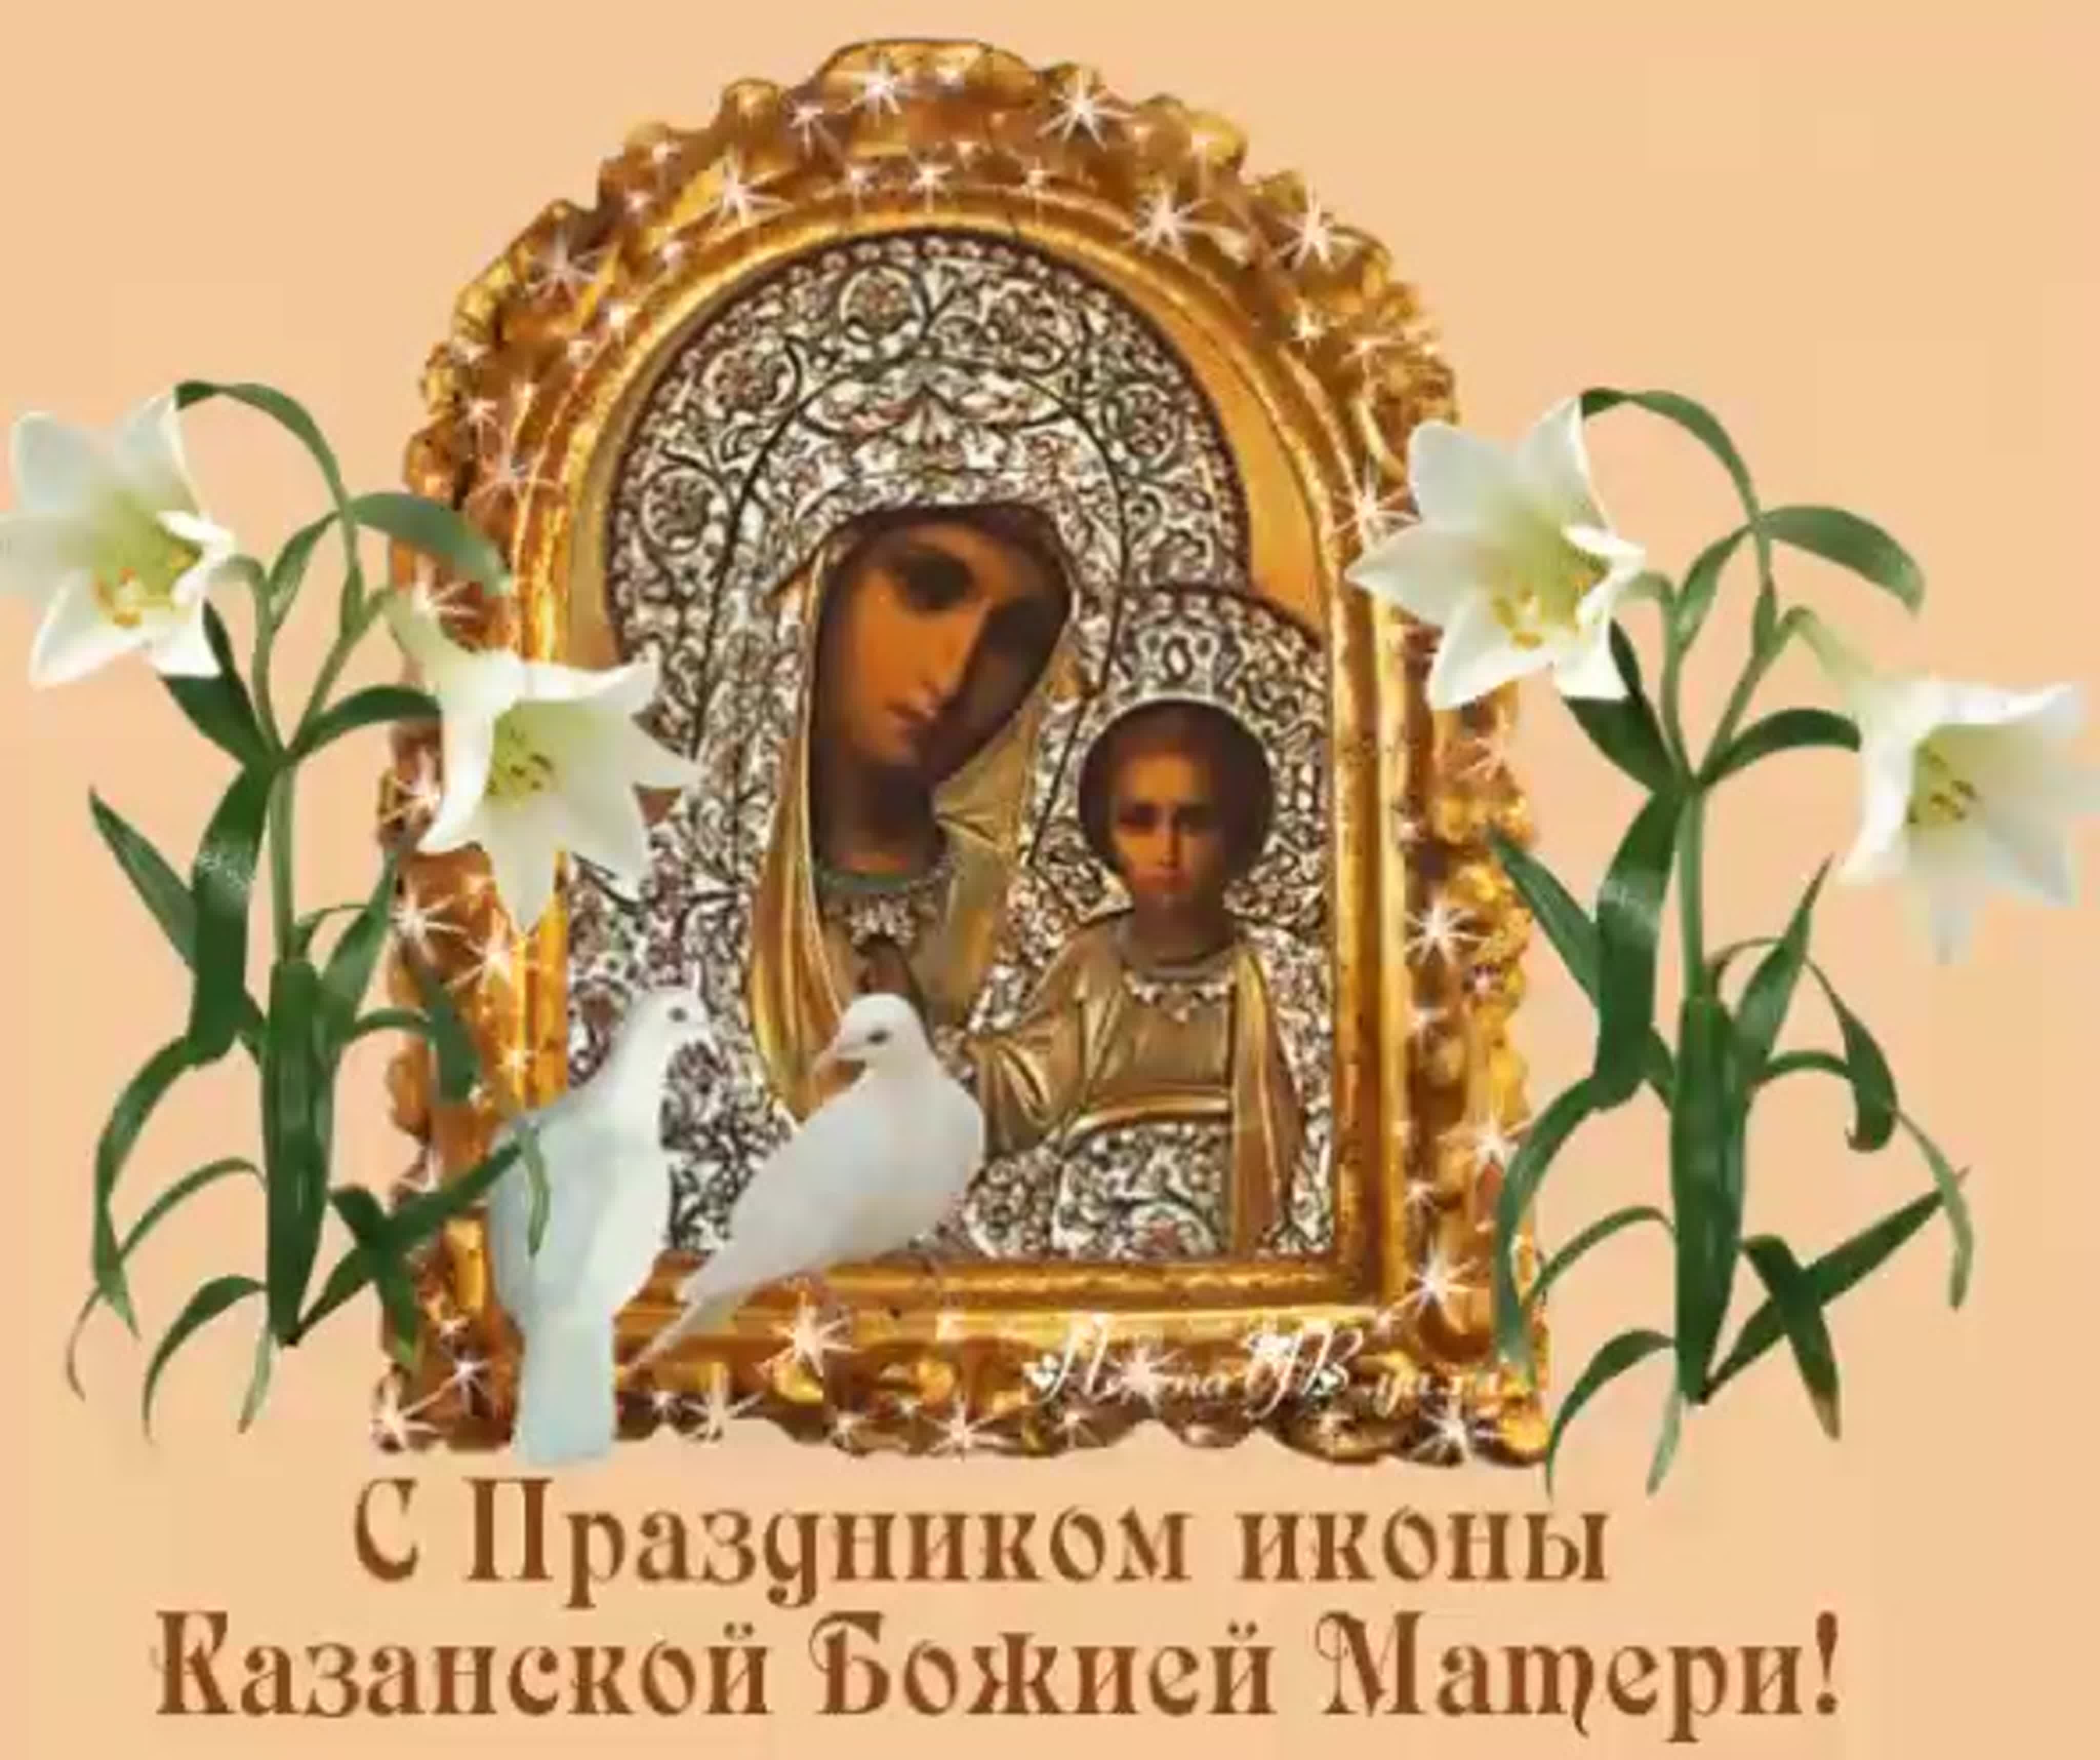 Поздравление день иконы божией матери